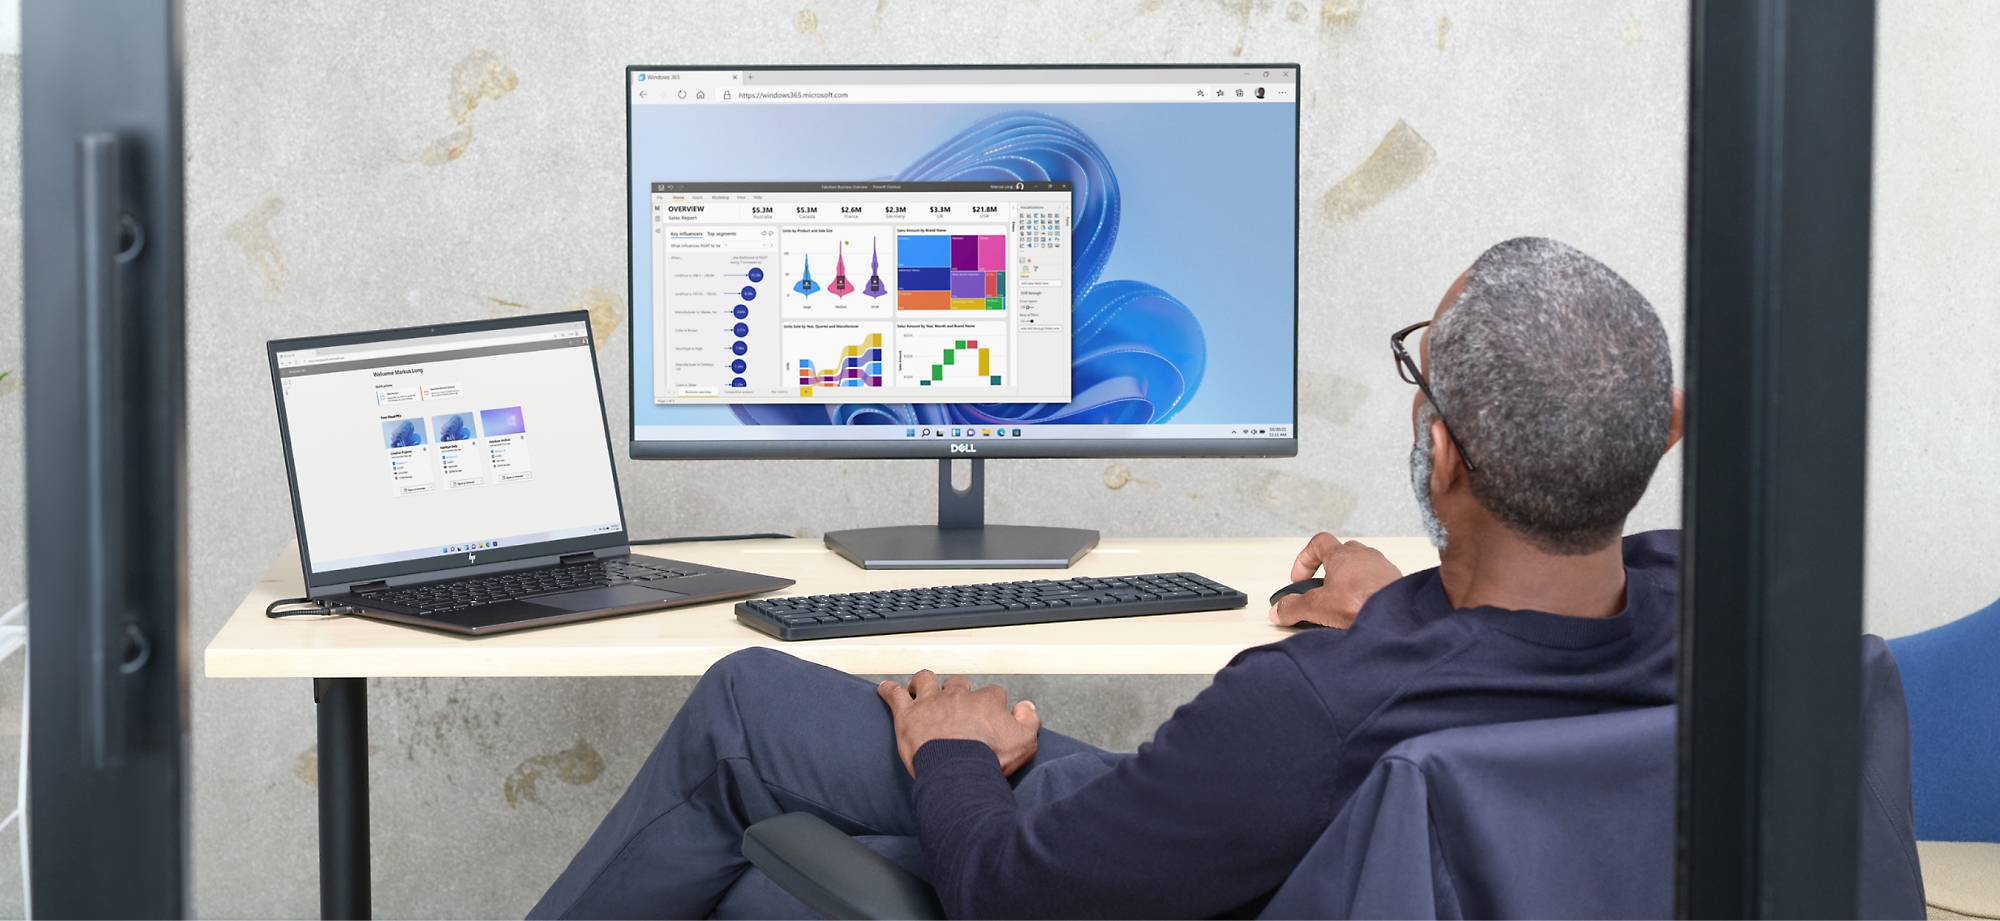 オフィス環境で、コンピューター画面とノート PC 上のデータ グラフを確認する男性。